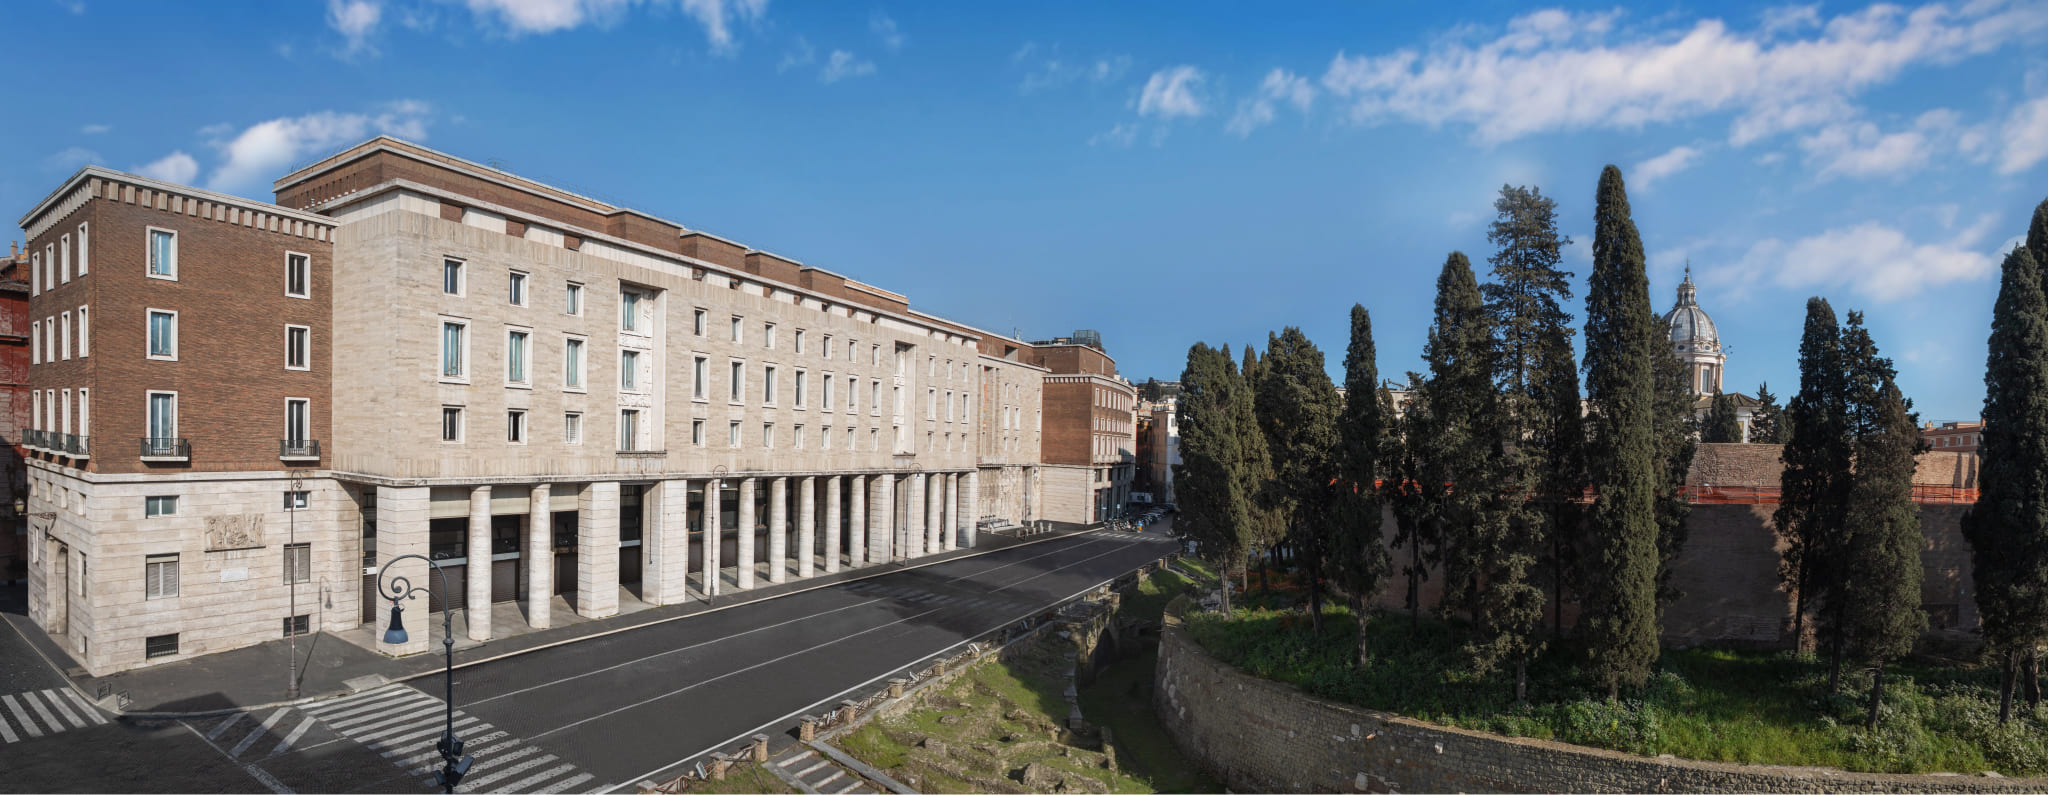 Рационализм, фрески, исключительность: о главных компонентах отеля Bvlgari в Риме (фото 1)